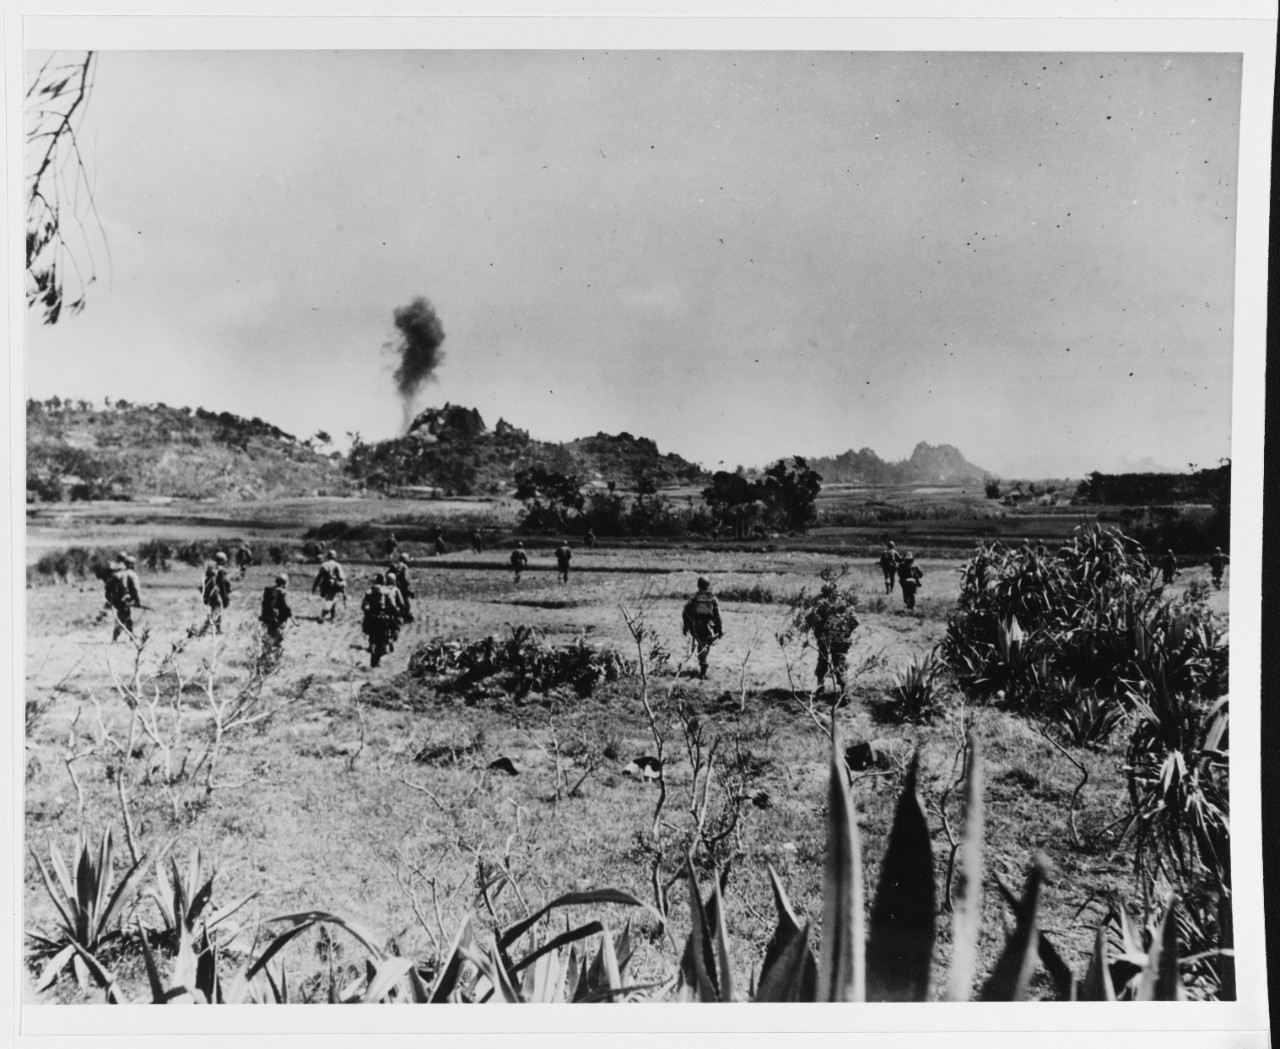 Okinawa, Ryukyus Islands, April 1945